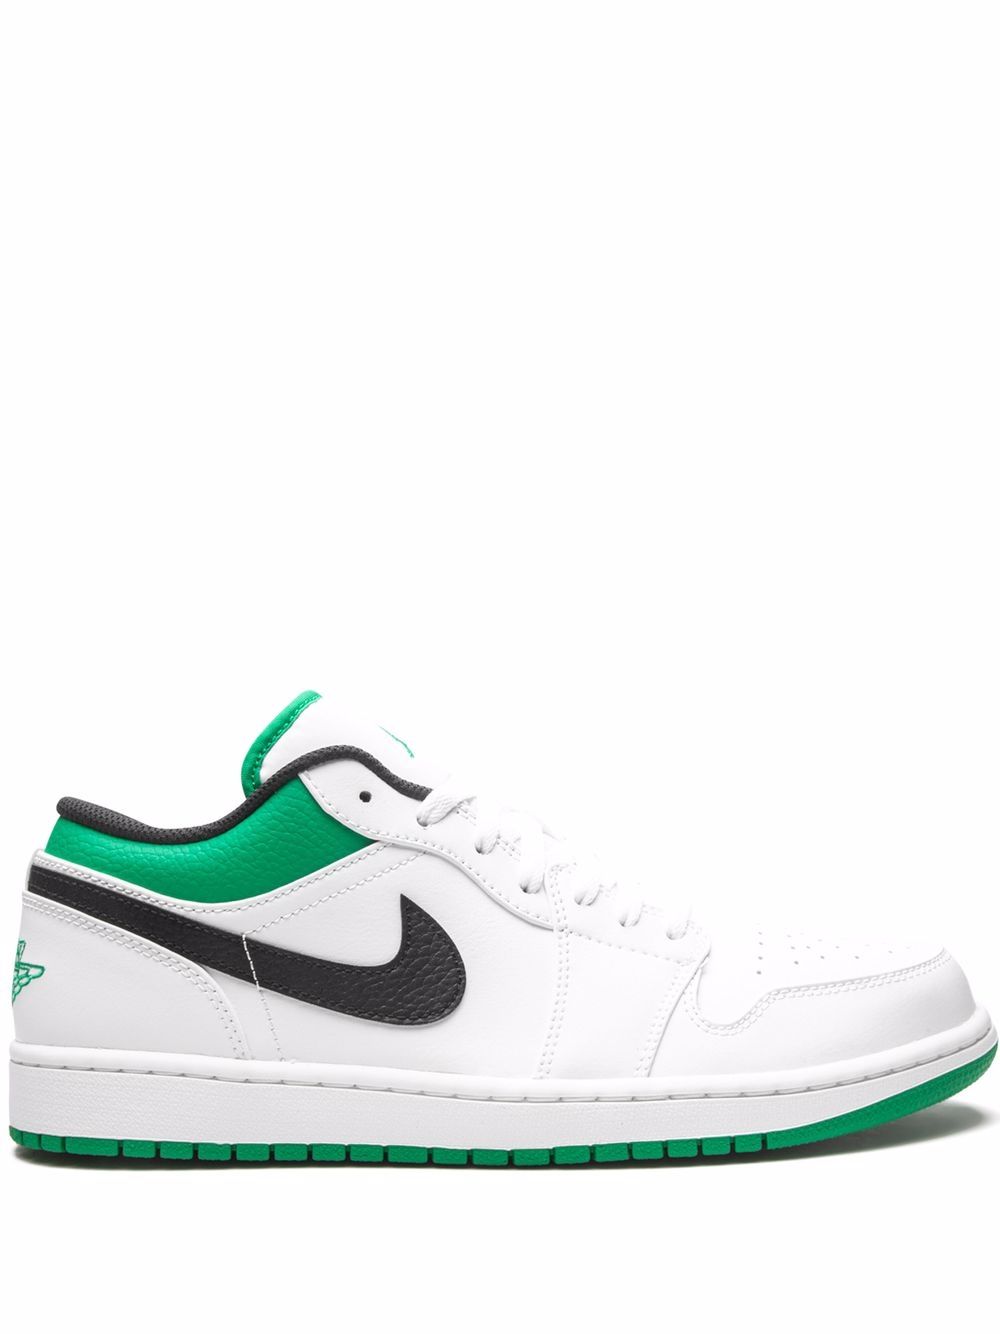 Jordan Air Jordan 1 Low "White/Lucky Green" sneakers